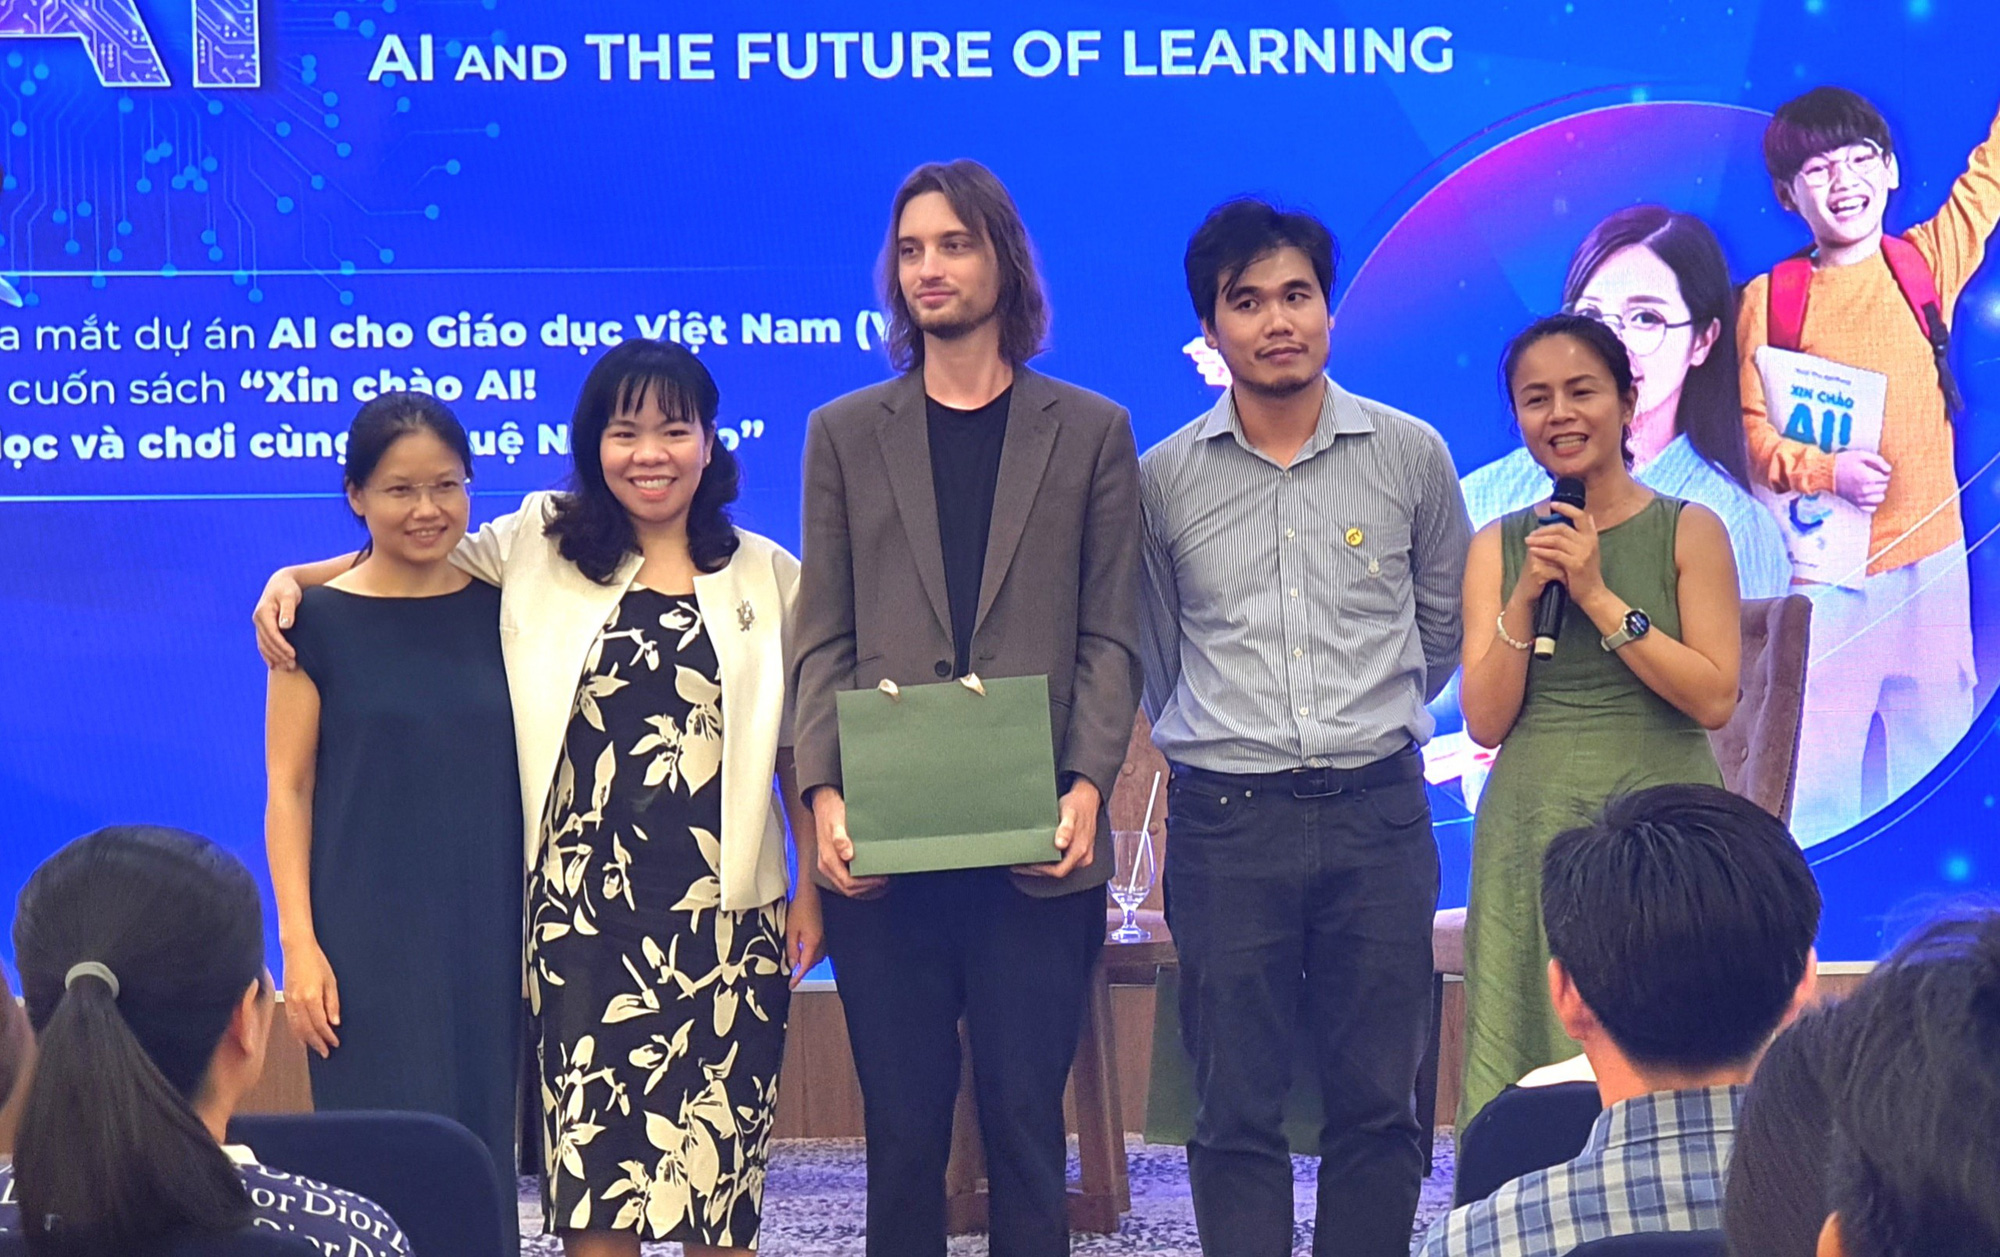 Ban điều hành dự án AI cho giáo dục Việt Nam - Ảnh: H.HG 